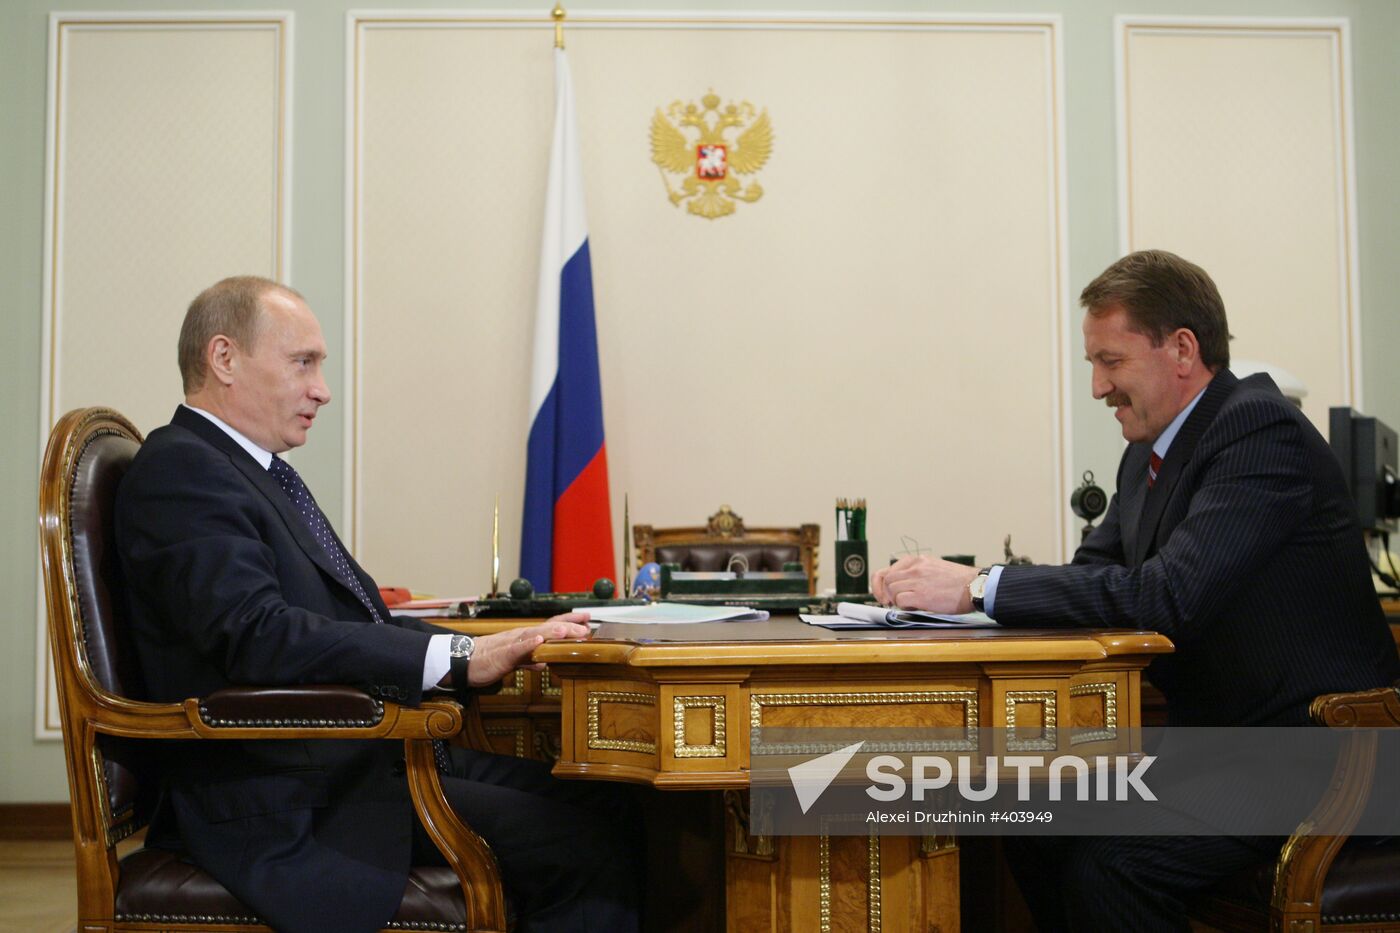 Vladimir Putin meets with Alexei Gordeyev in Novo-Ogaryovo